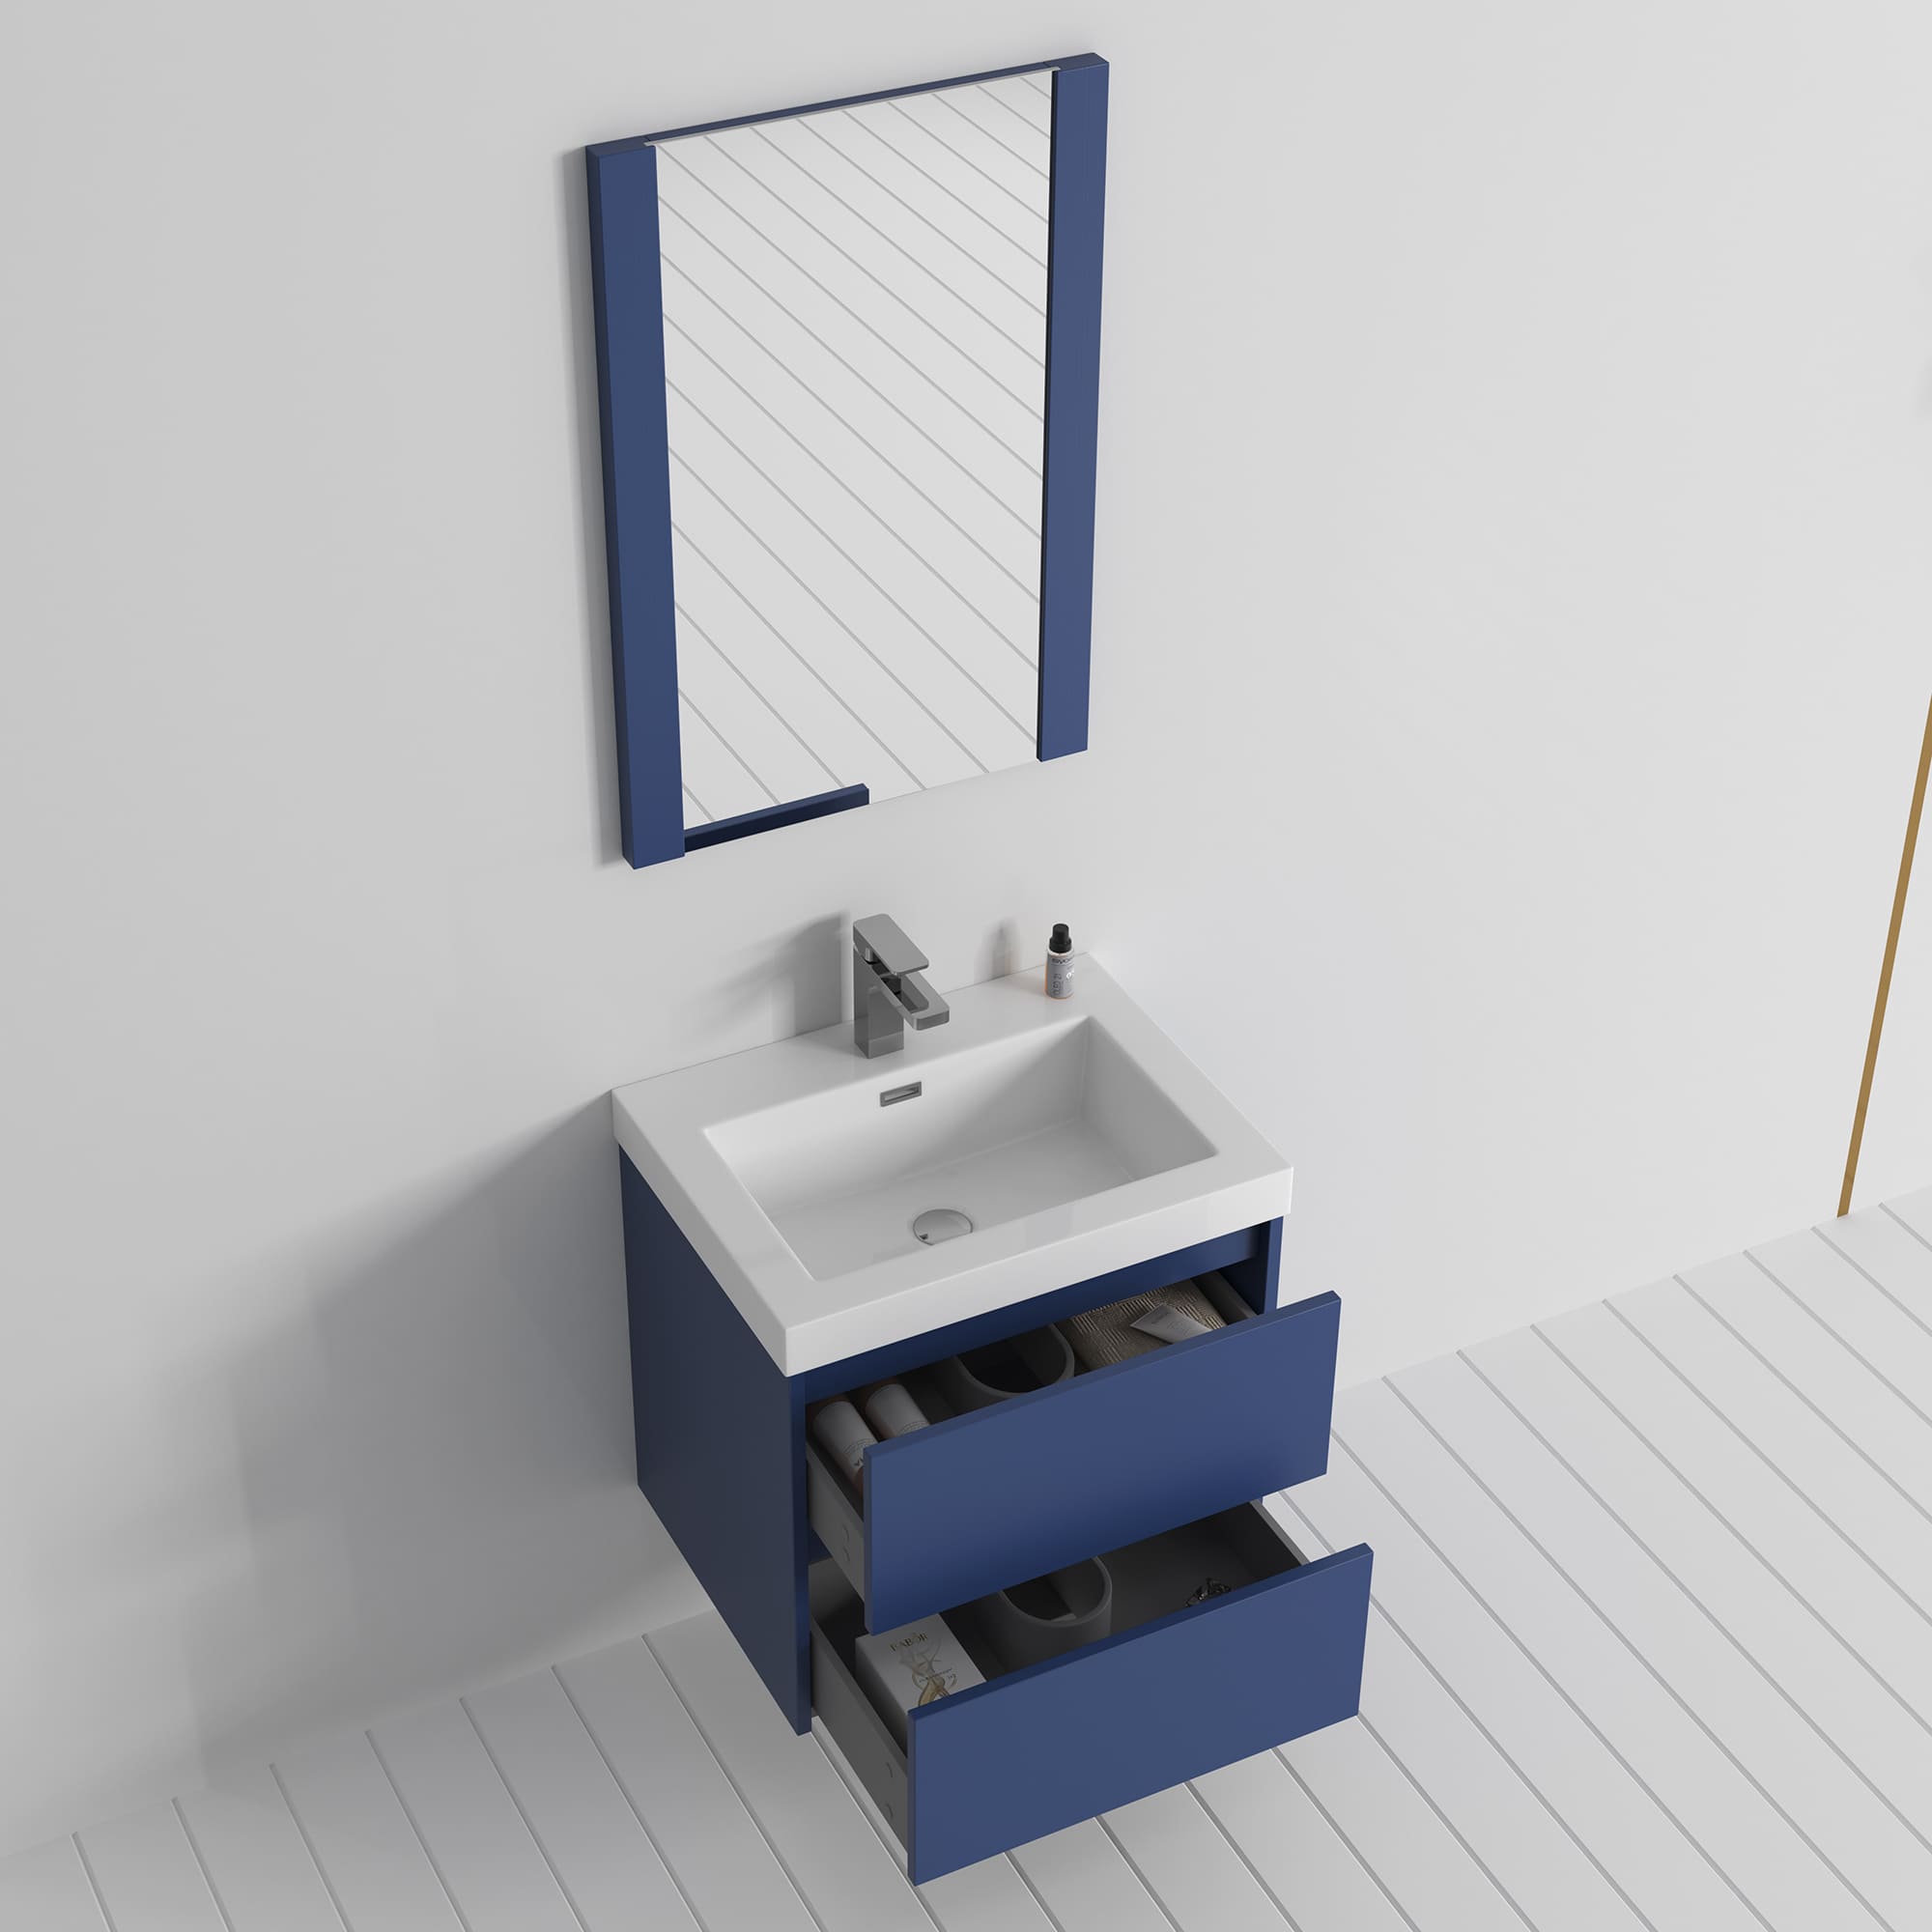 Valencia 24" Bathroom Vanity  #size_24"  #color_navy blue